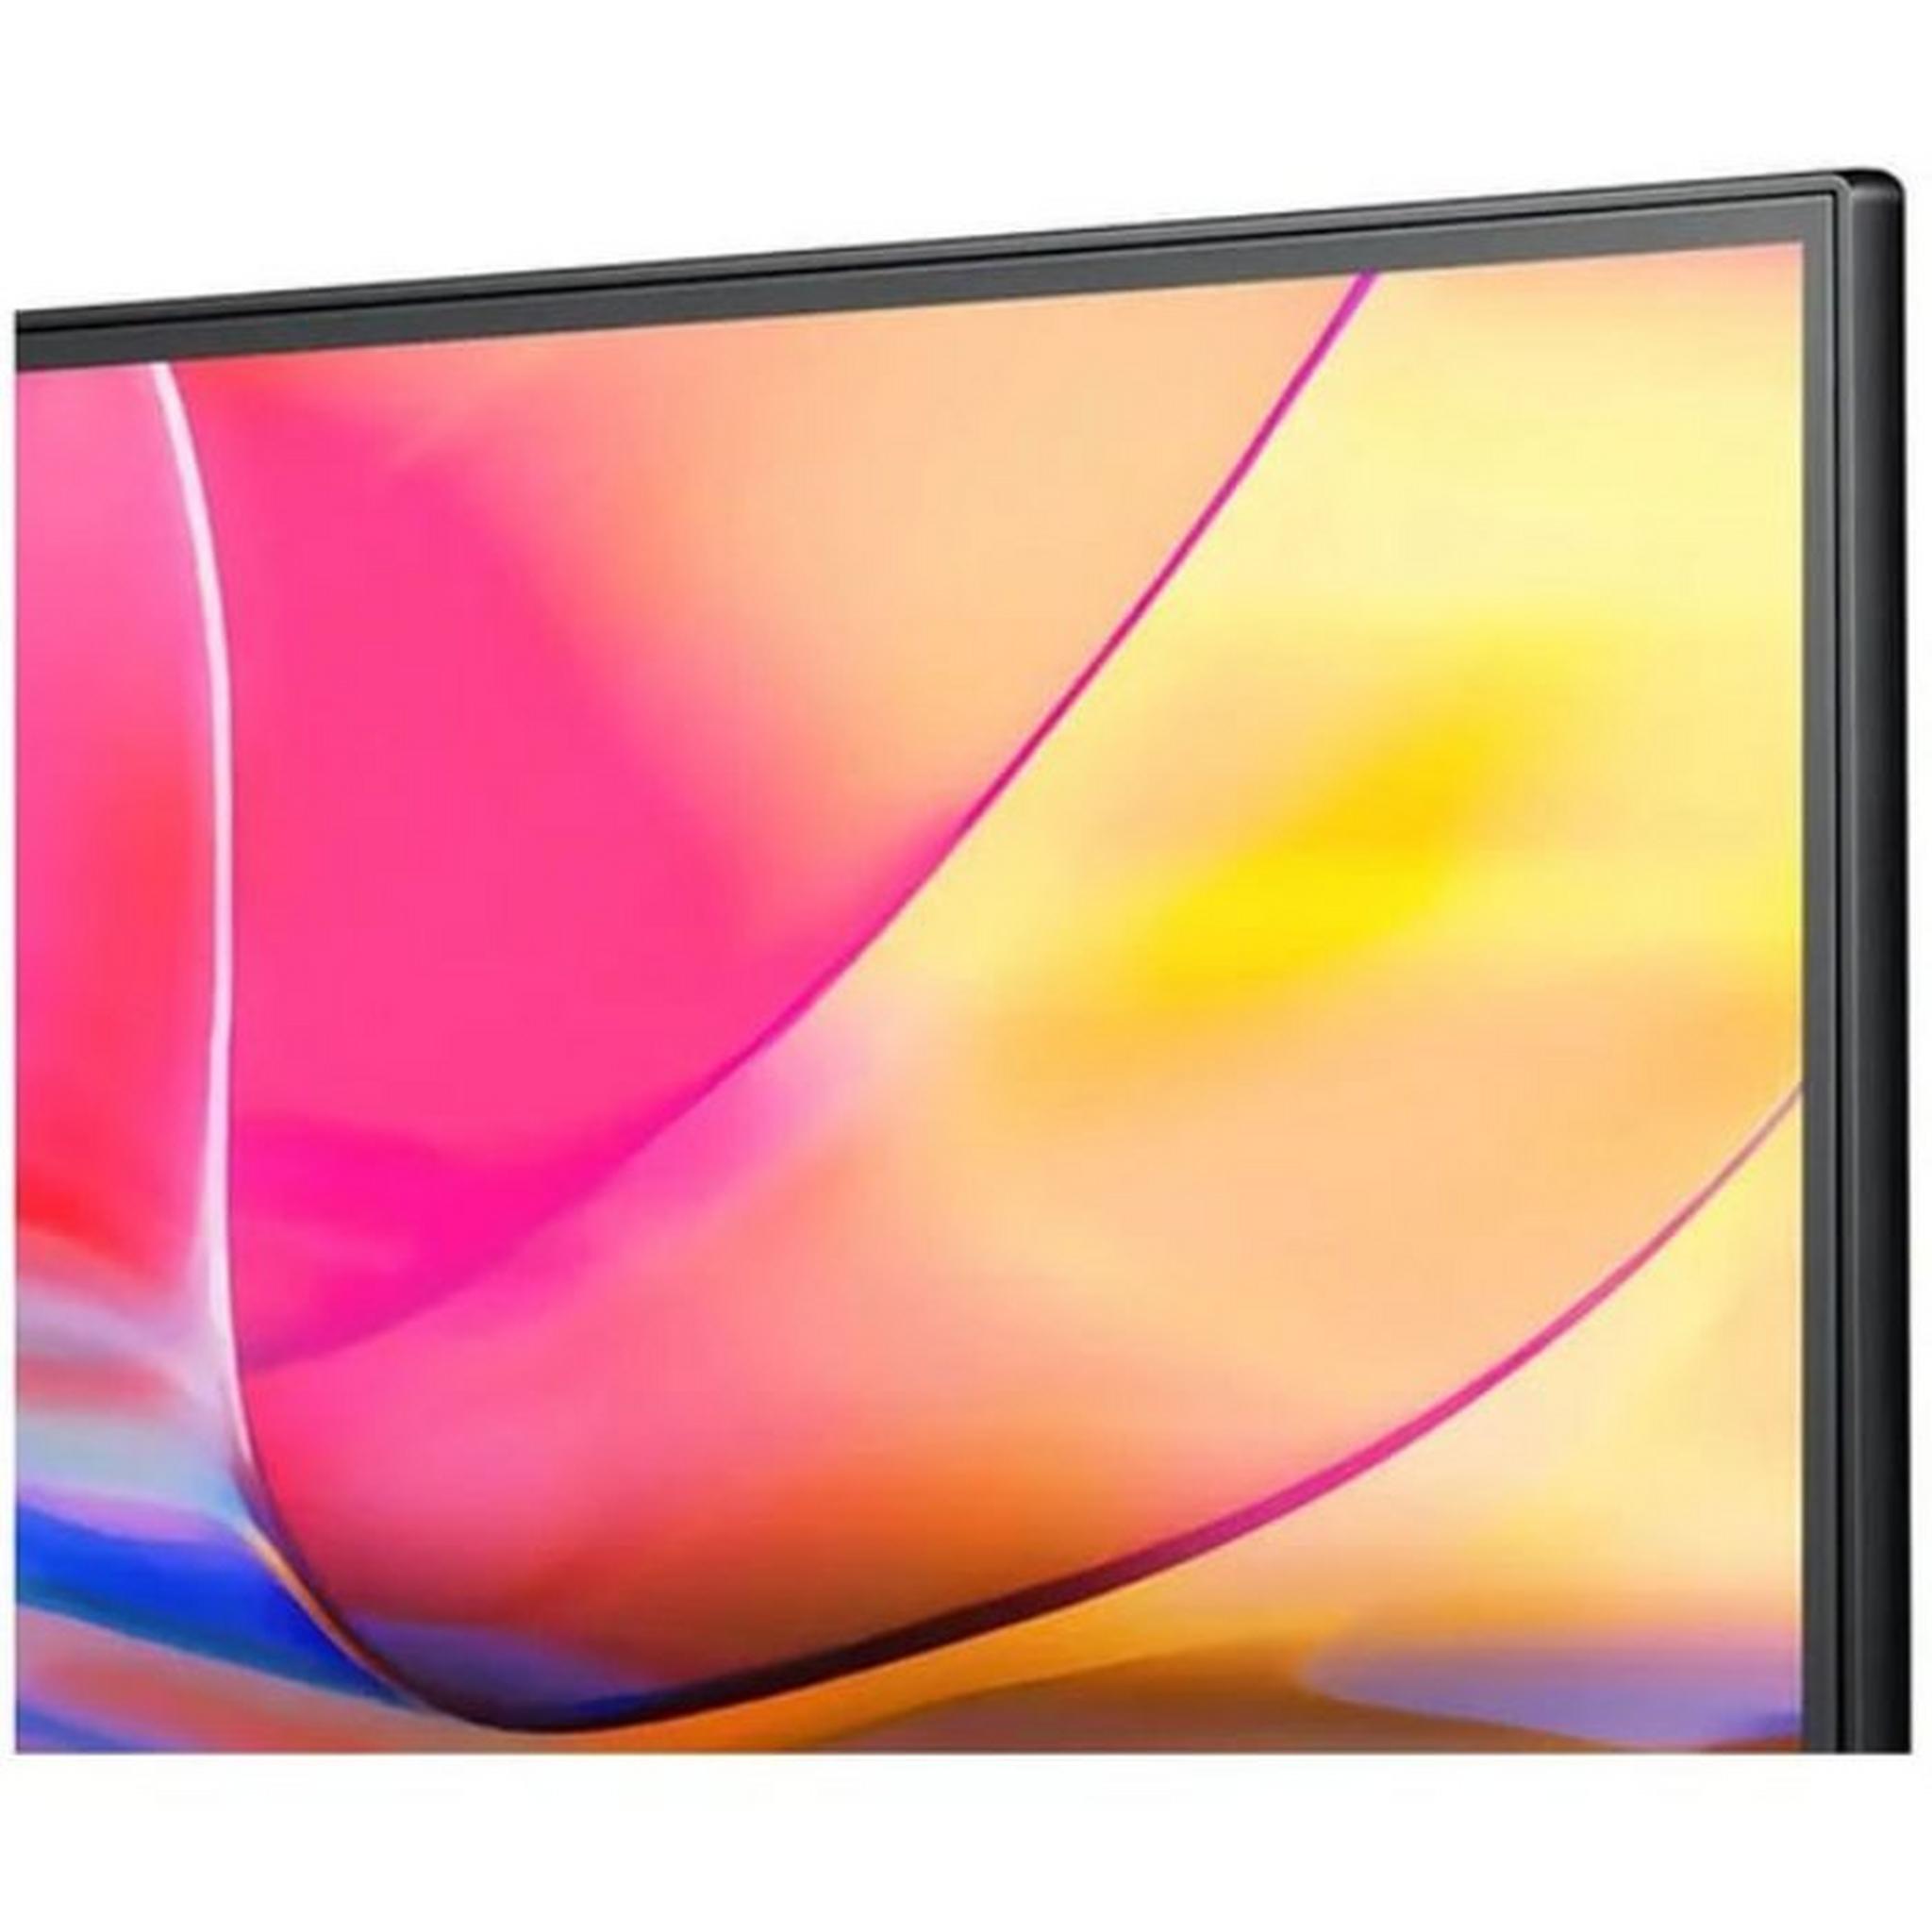 HISENSE 75-Inches UHD 4K LED Smart TV, 75A7K – Black